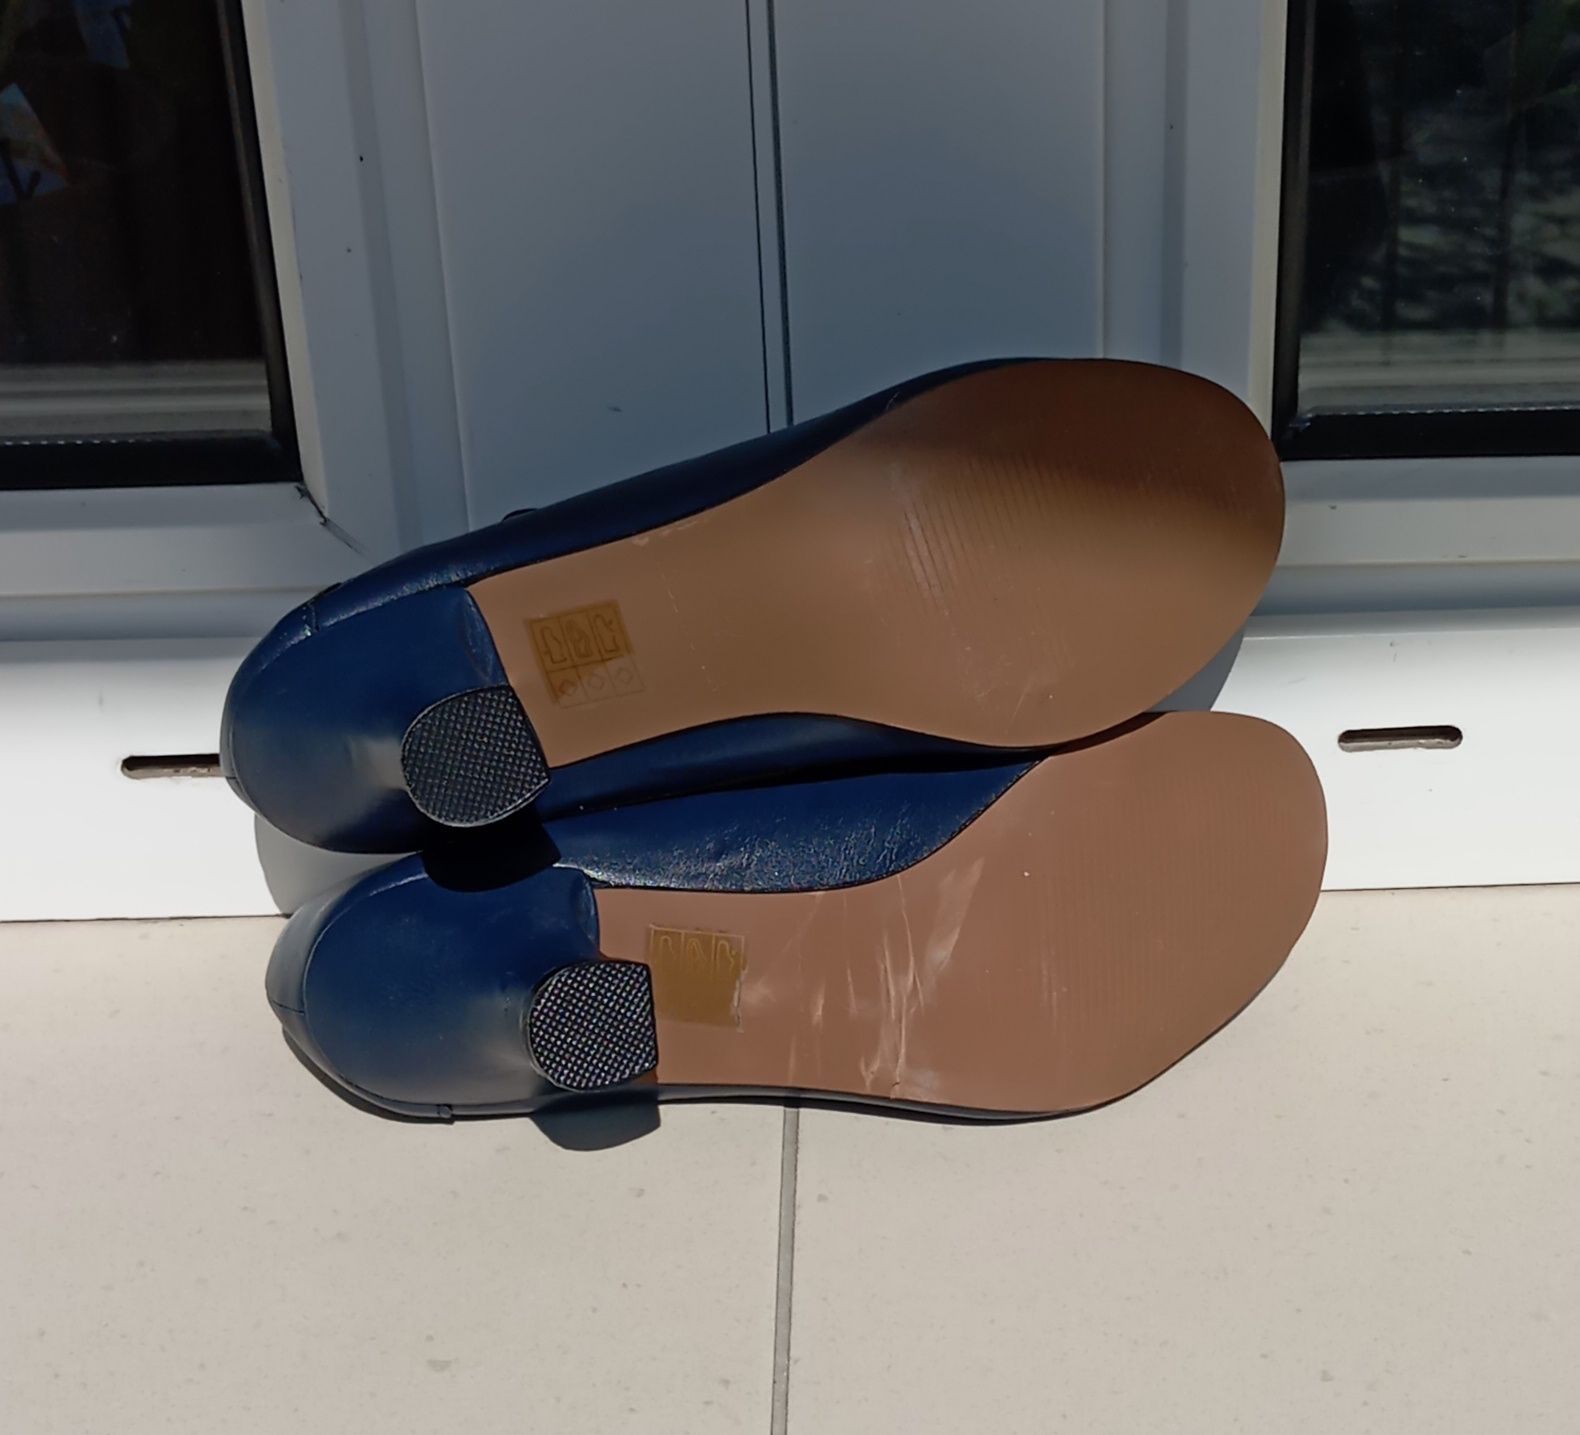 Granatowe buty Ajwani, rozmiar 5, zapinane na guzik